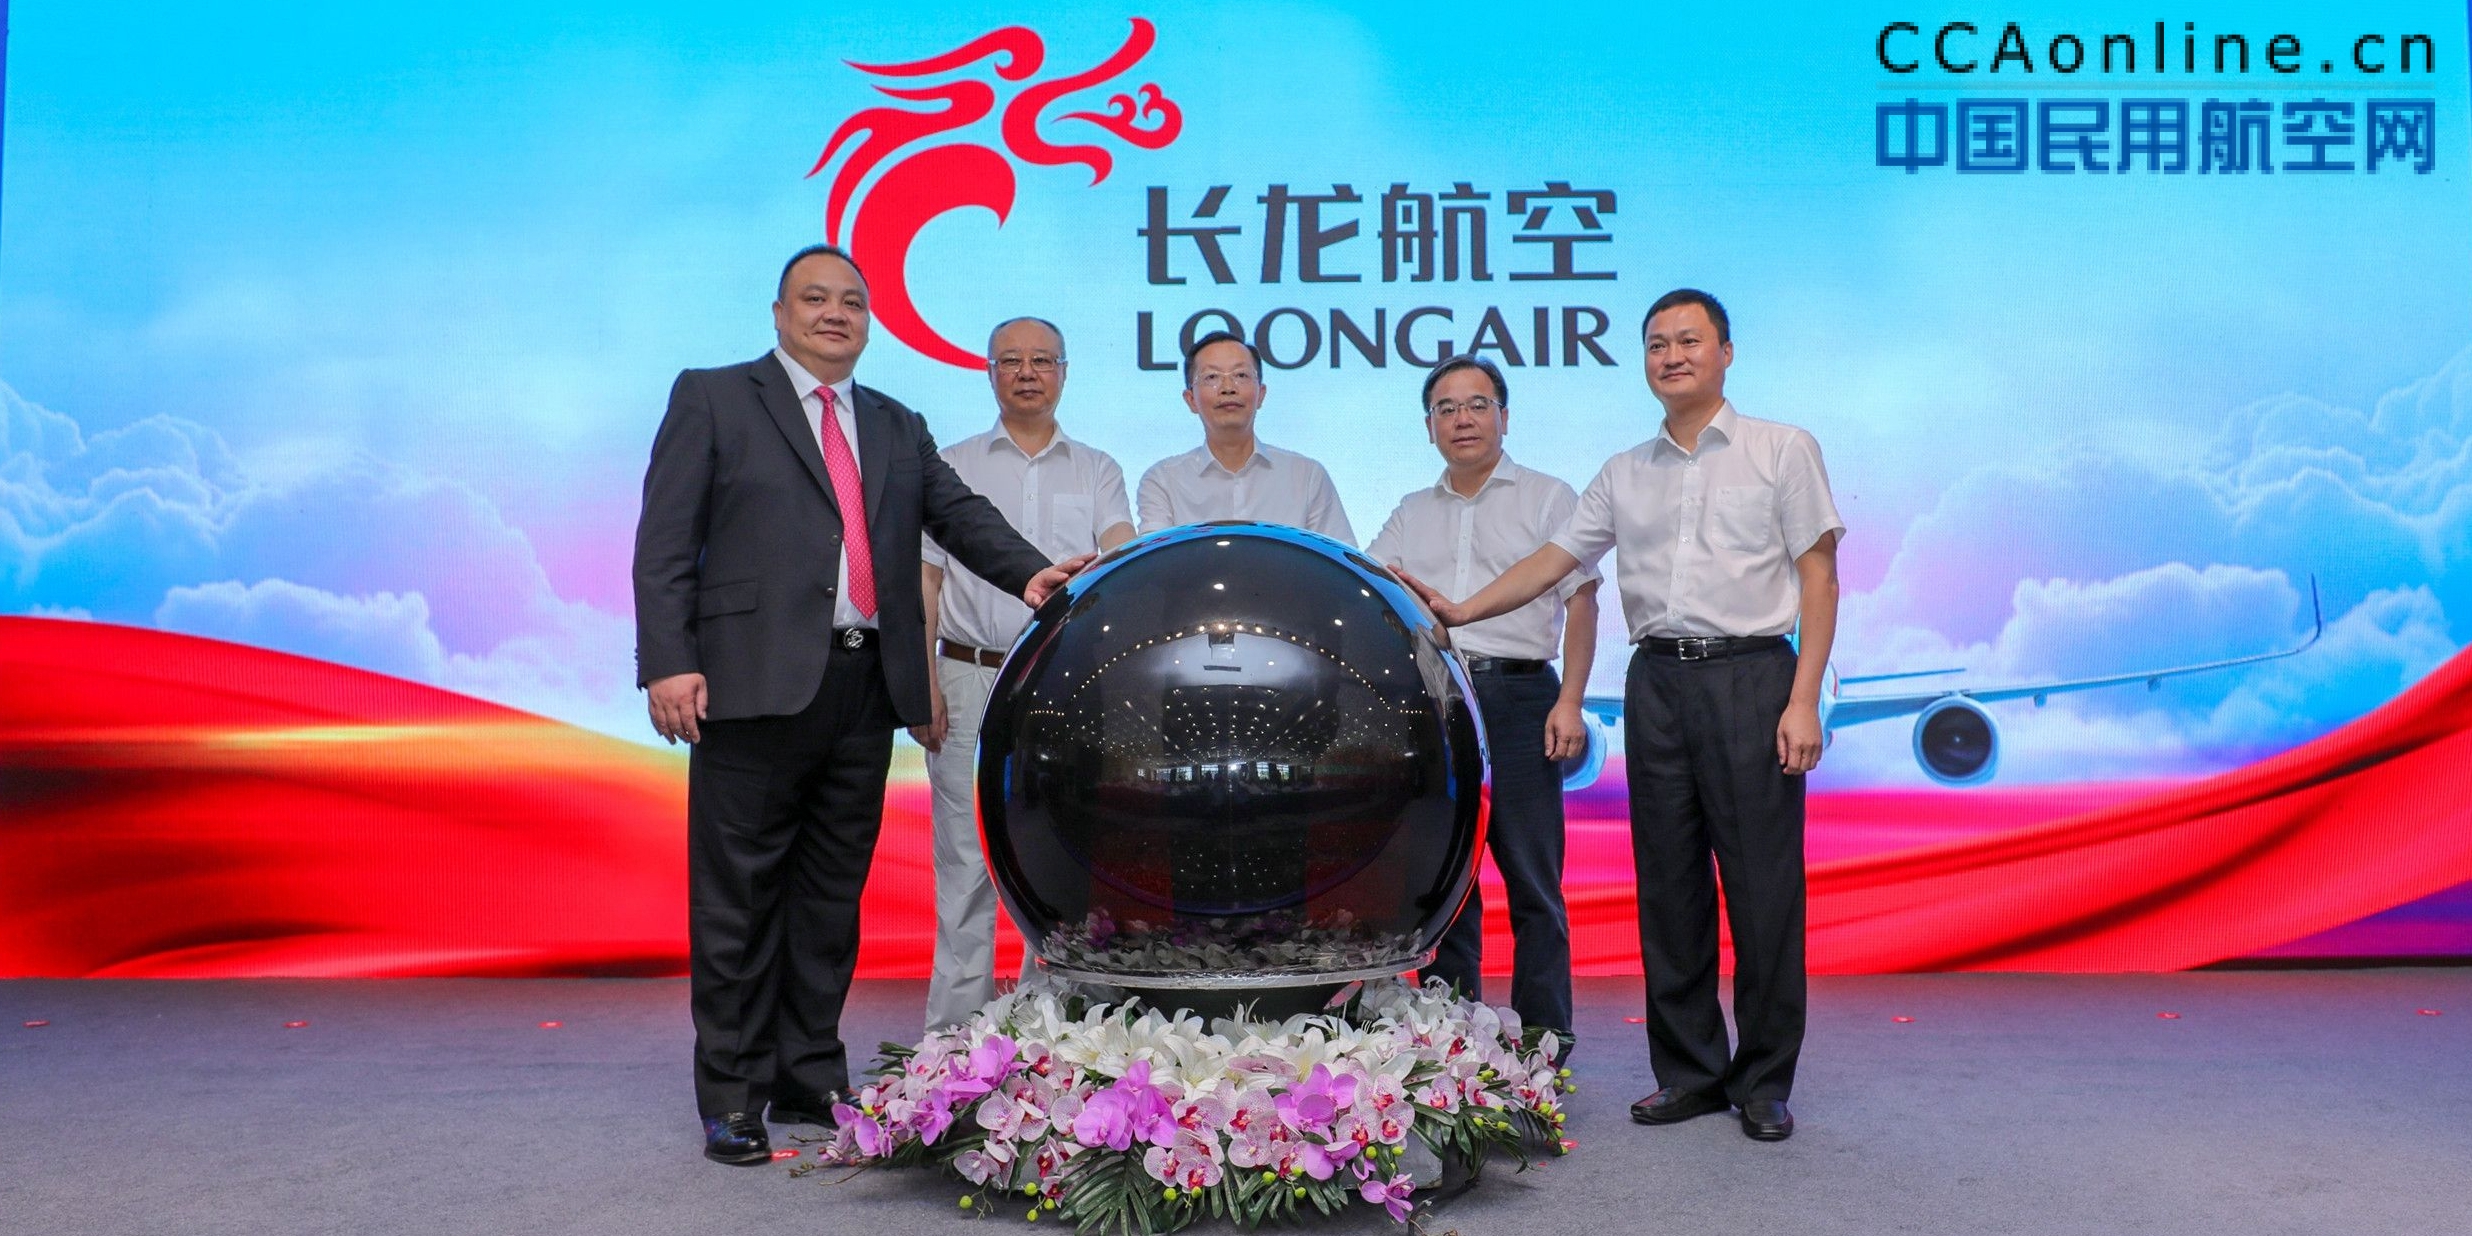 长龙航空西南分公司正式揭牌成立